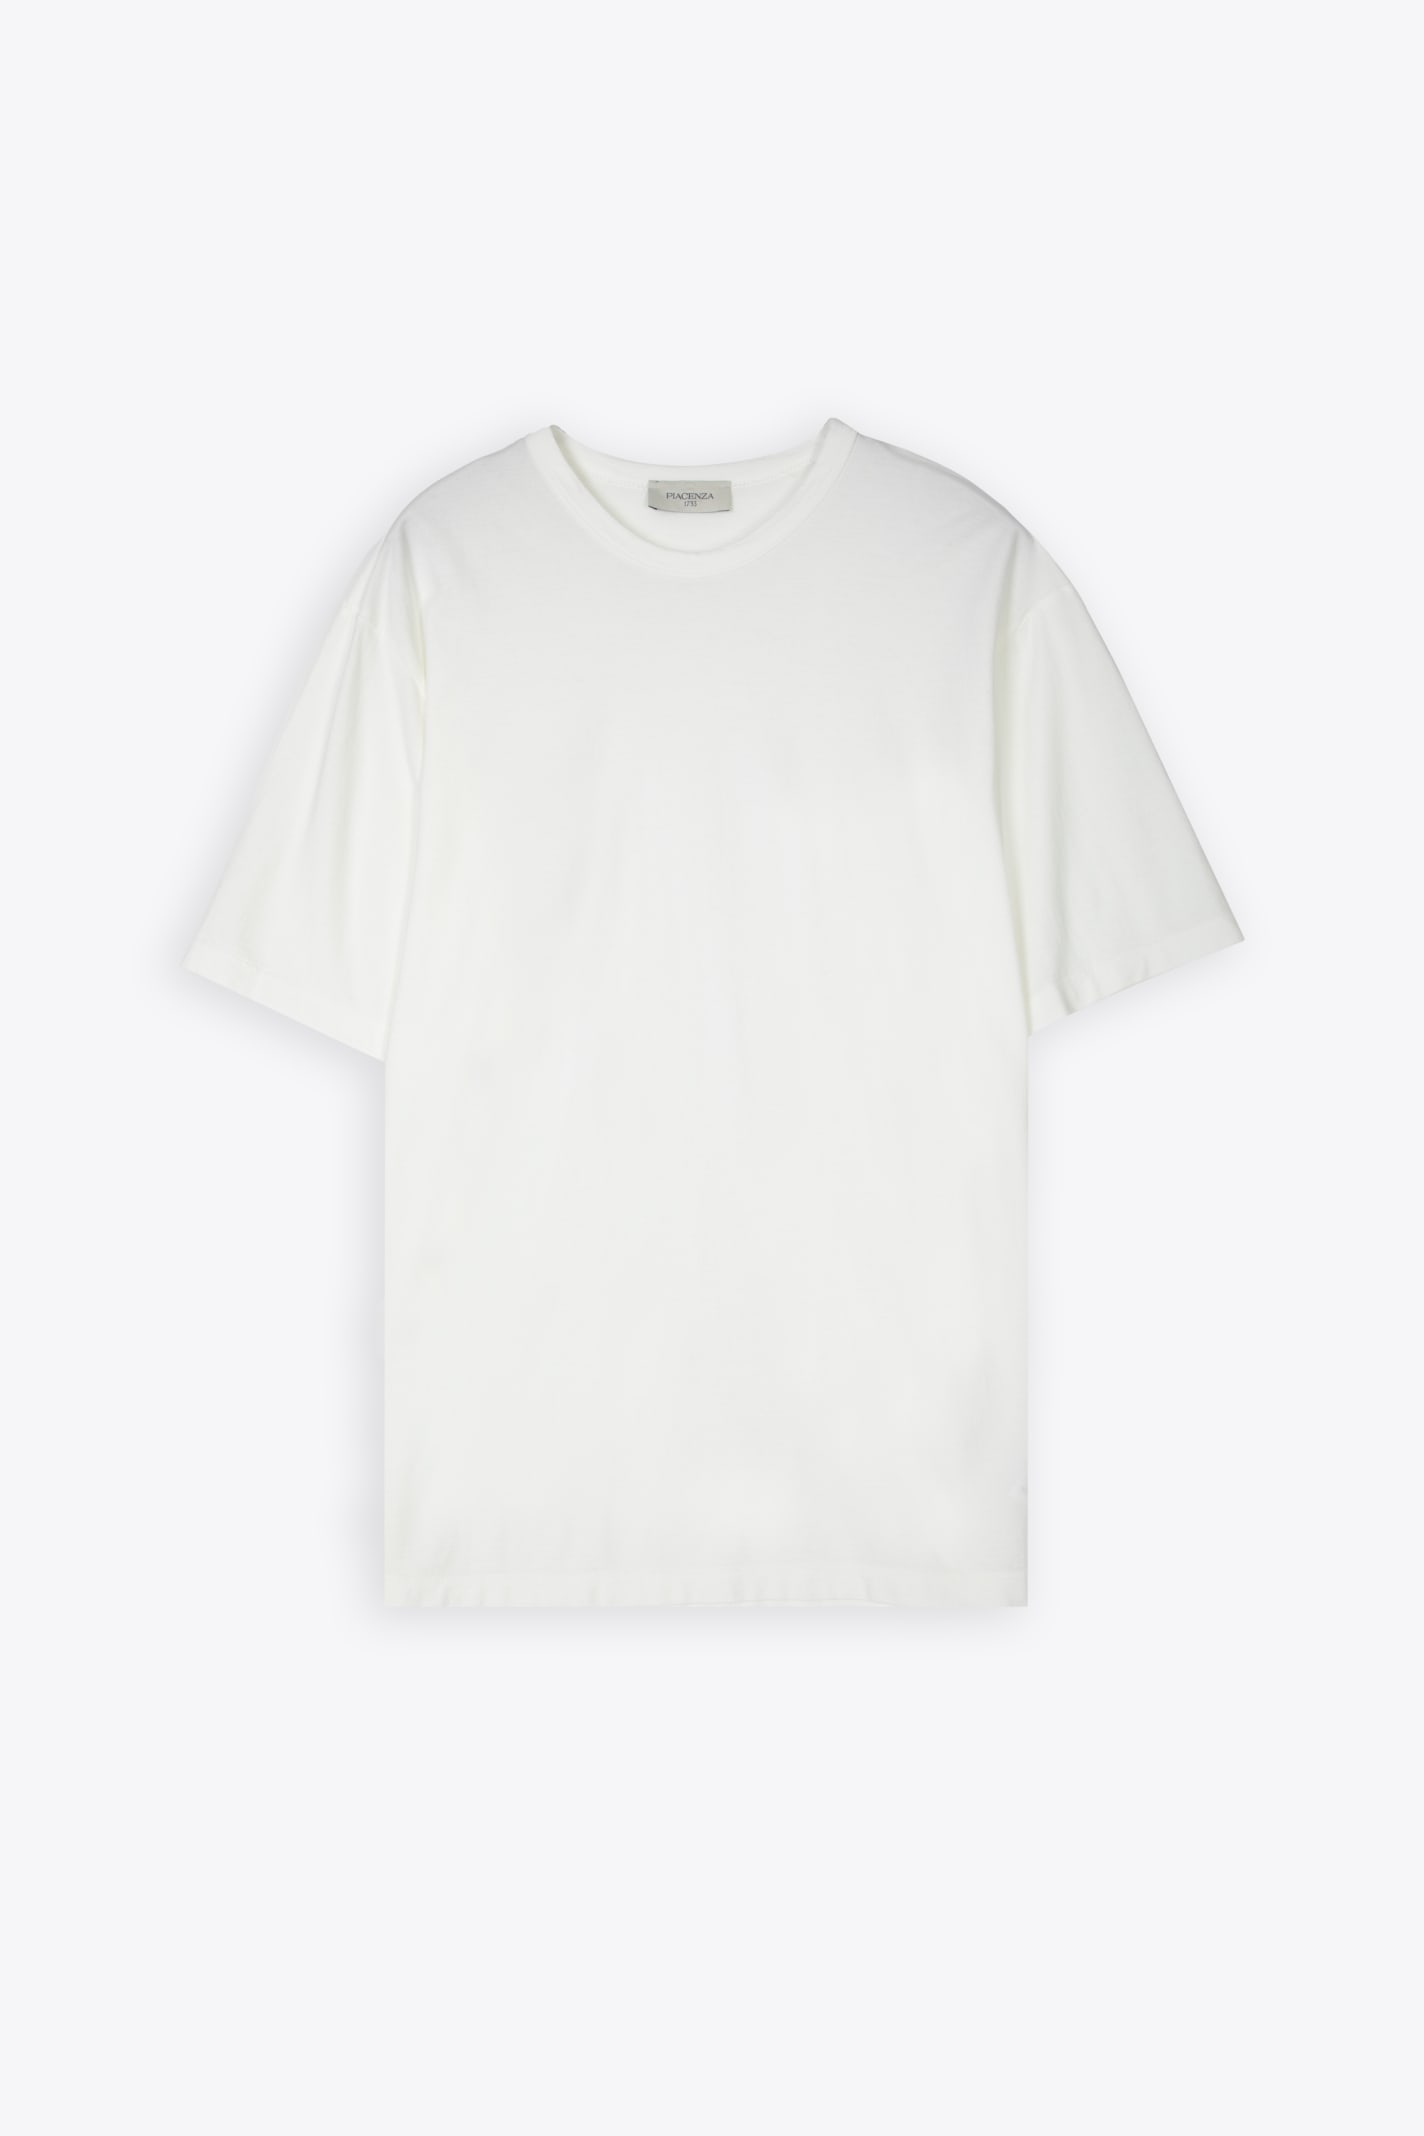 T-shirt White lightweight cotton t-shirt